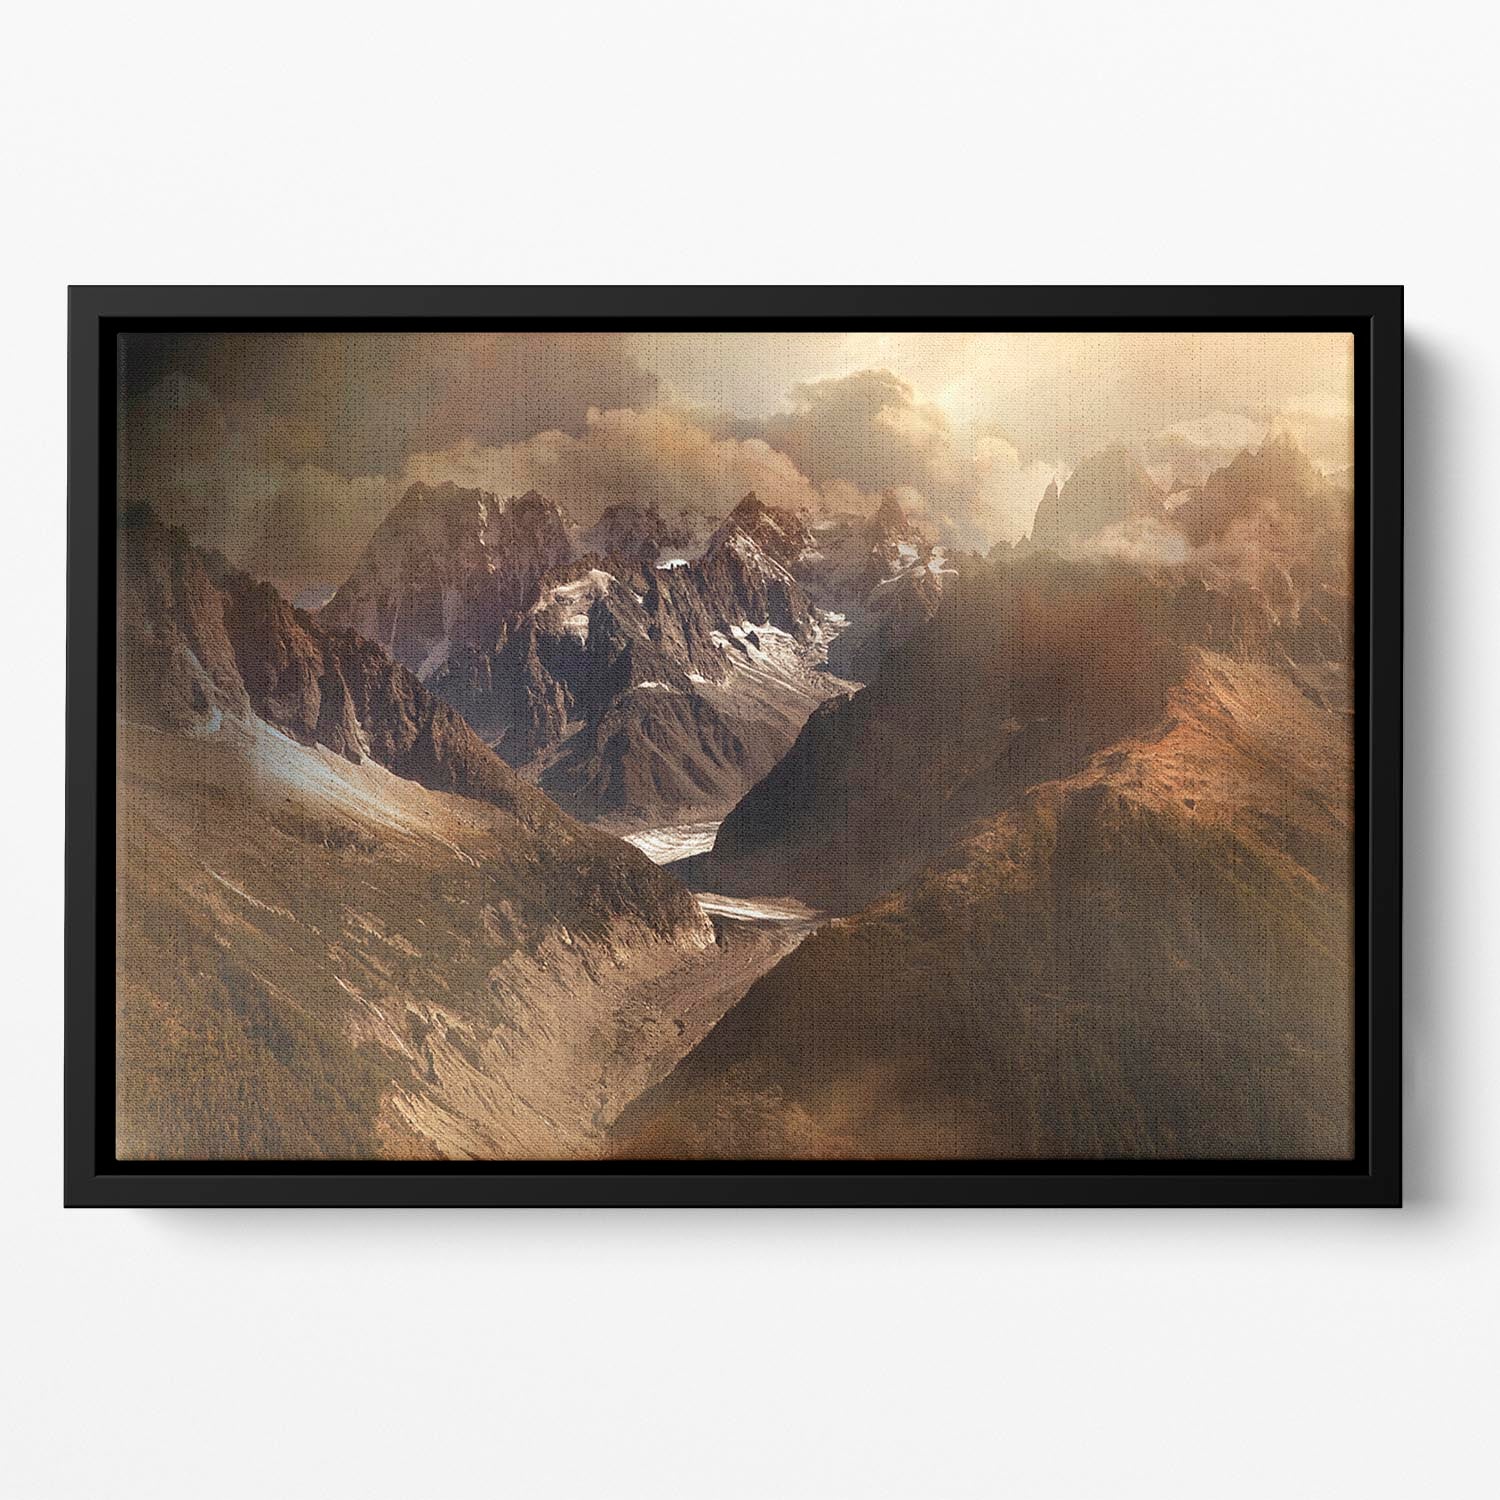 Mont Blanc Massiv Floating Framed Canvas - Canvas Art Rocks - 2